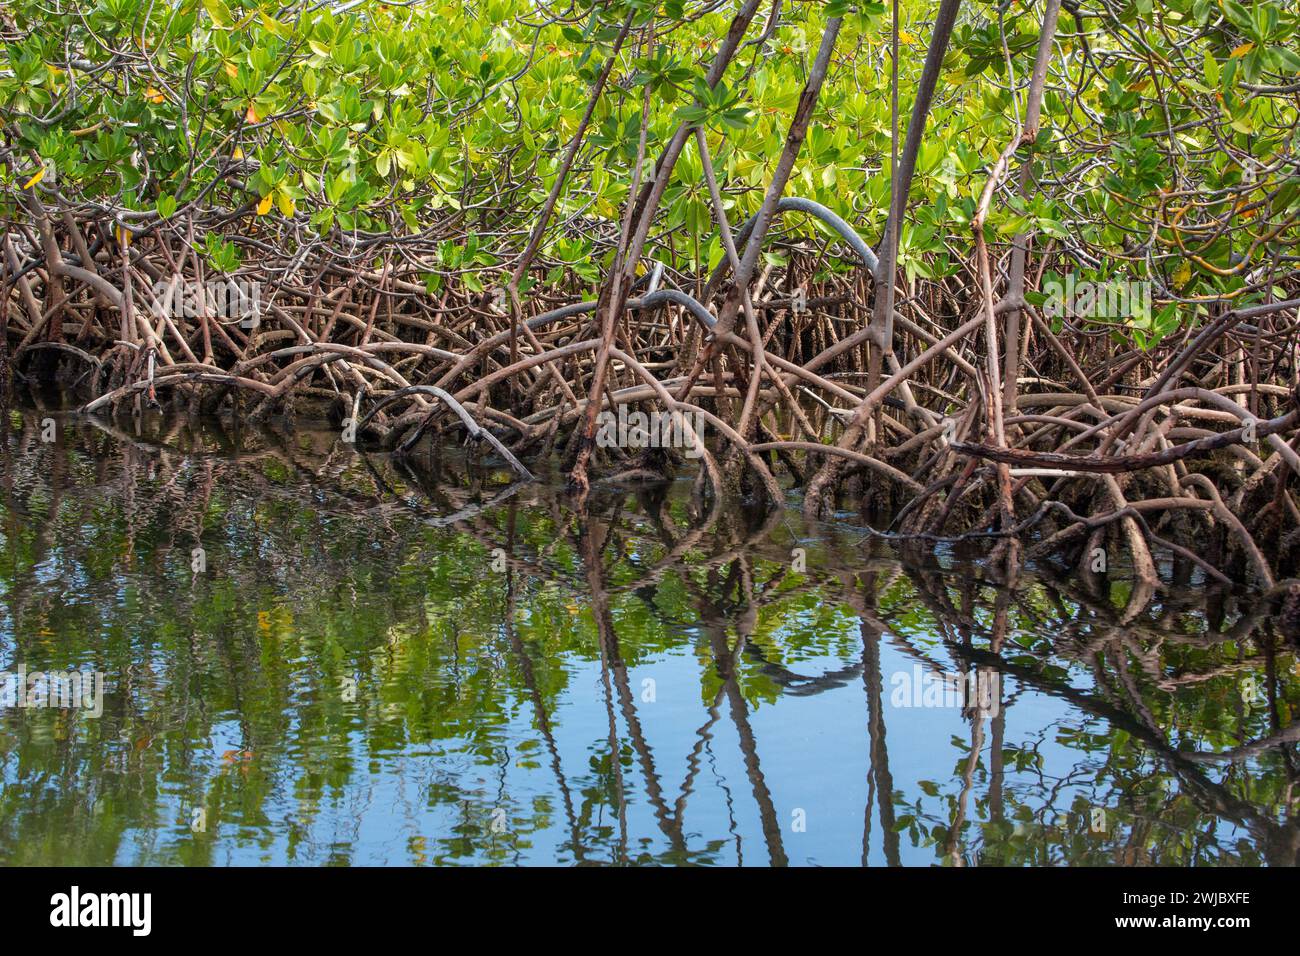 Radici aeree della mangrovia Rossa, Rhizophora Mangle, in una palude salata nel Parco Nazionale di Monte Cristi, Repubblica Dominicana. Foto Stock